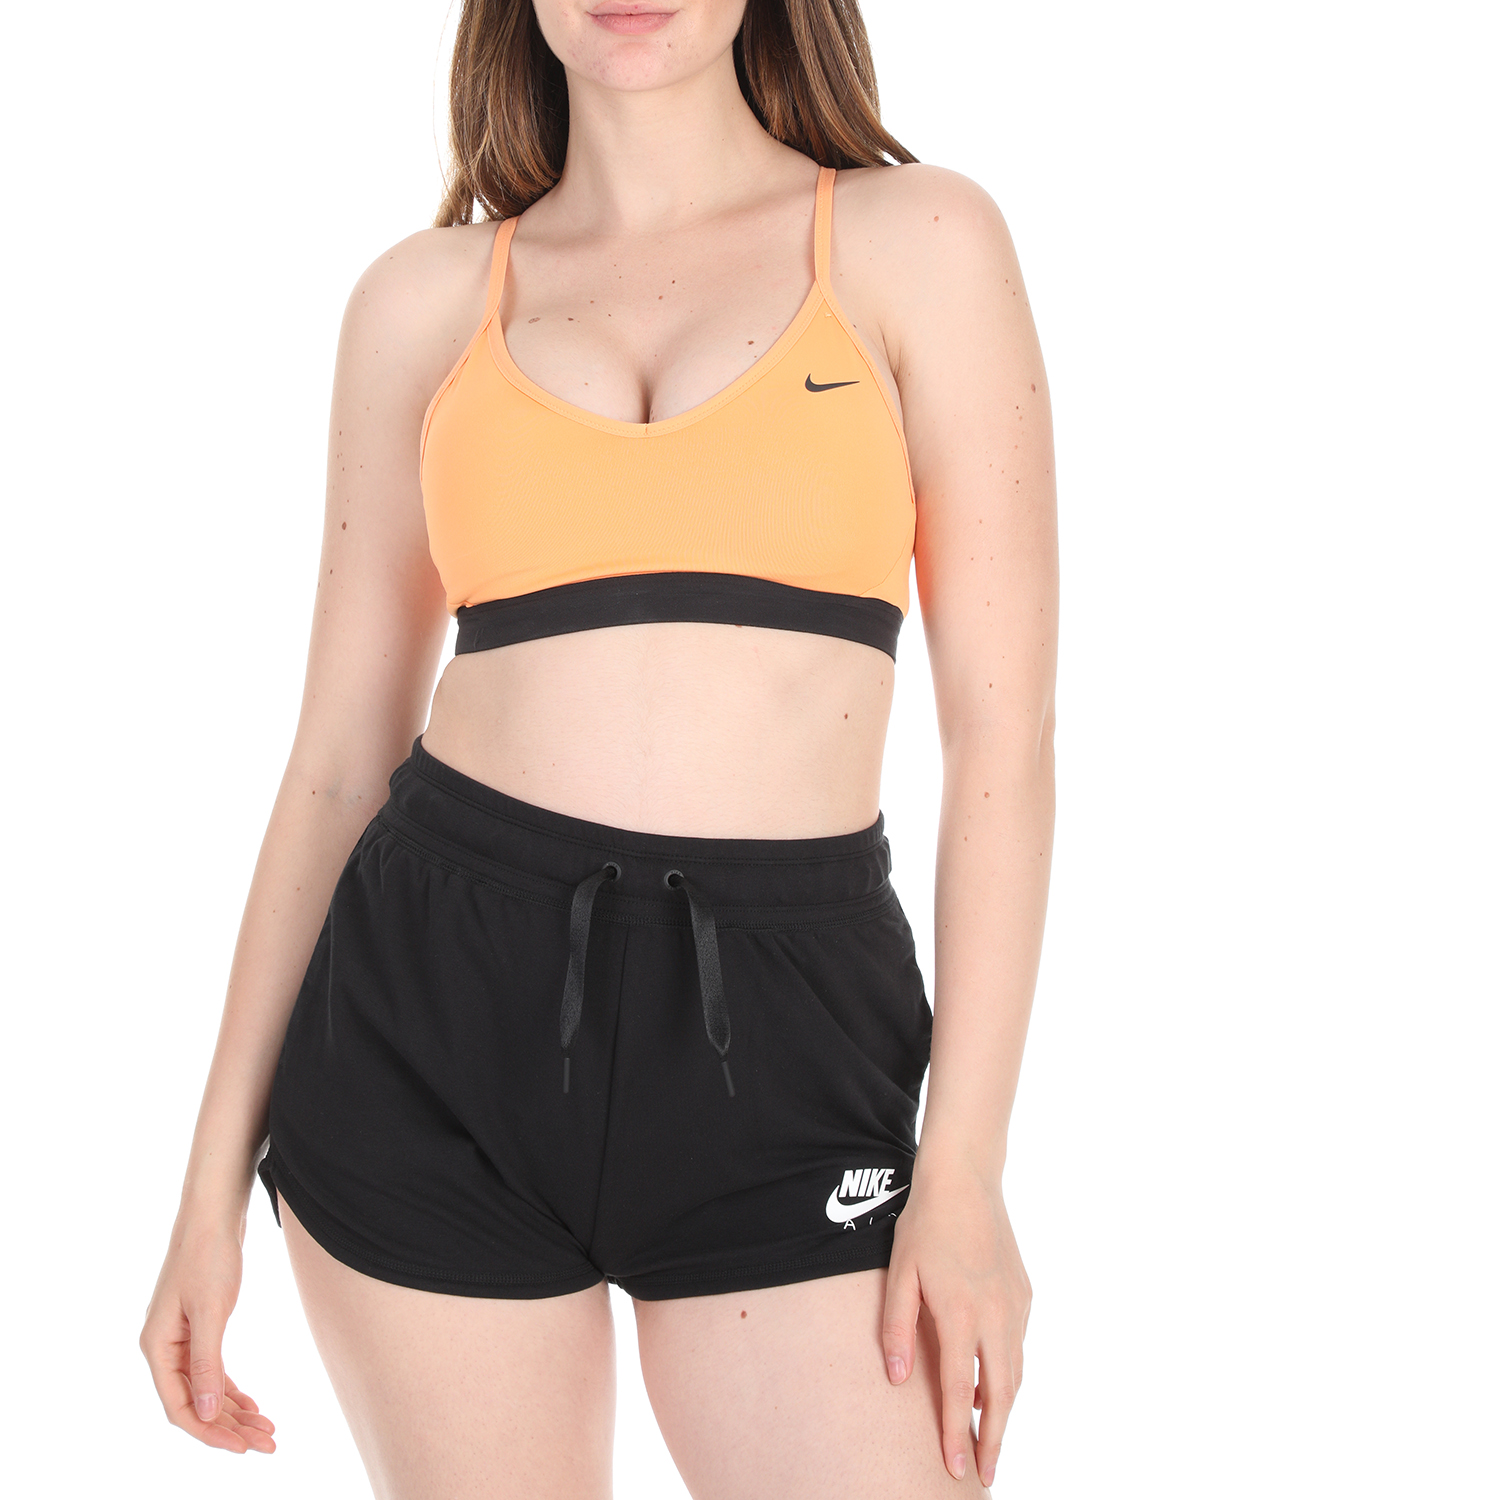 NIKE - Γυναικείο αθλητικό μπουστάκι NIKE INDY BRA πορτοκαλί Γυναικεία/Ρούχα/Αθλητικά/Μπουστάκια